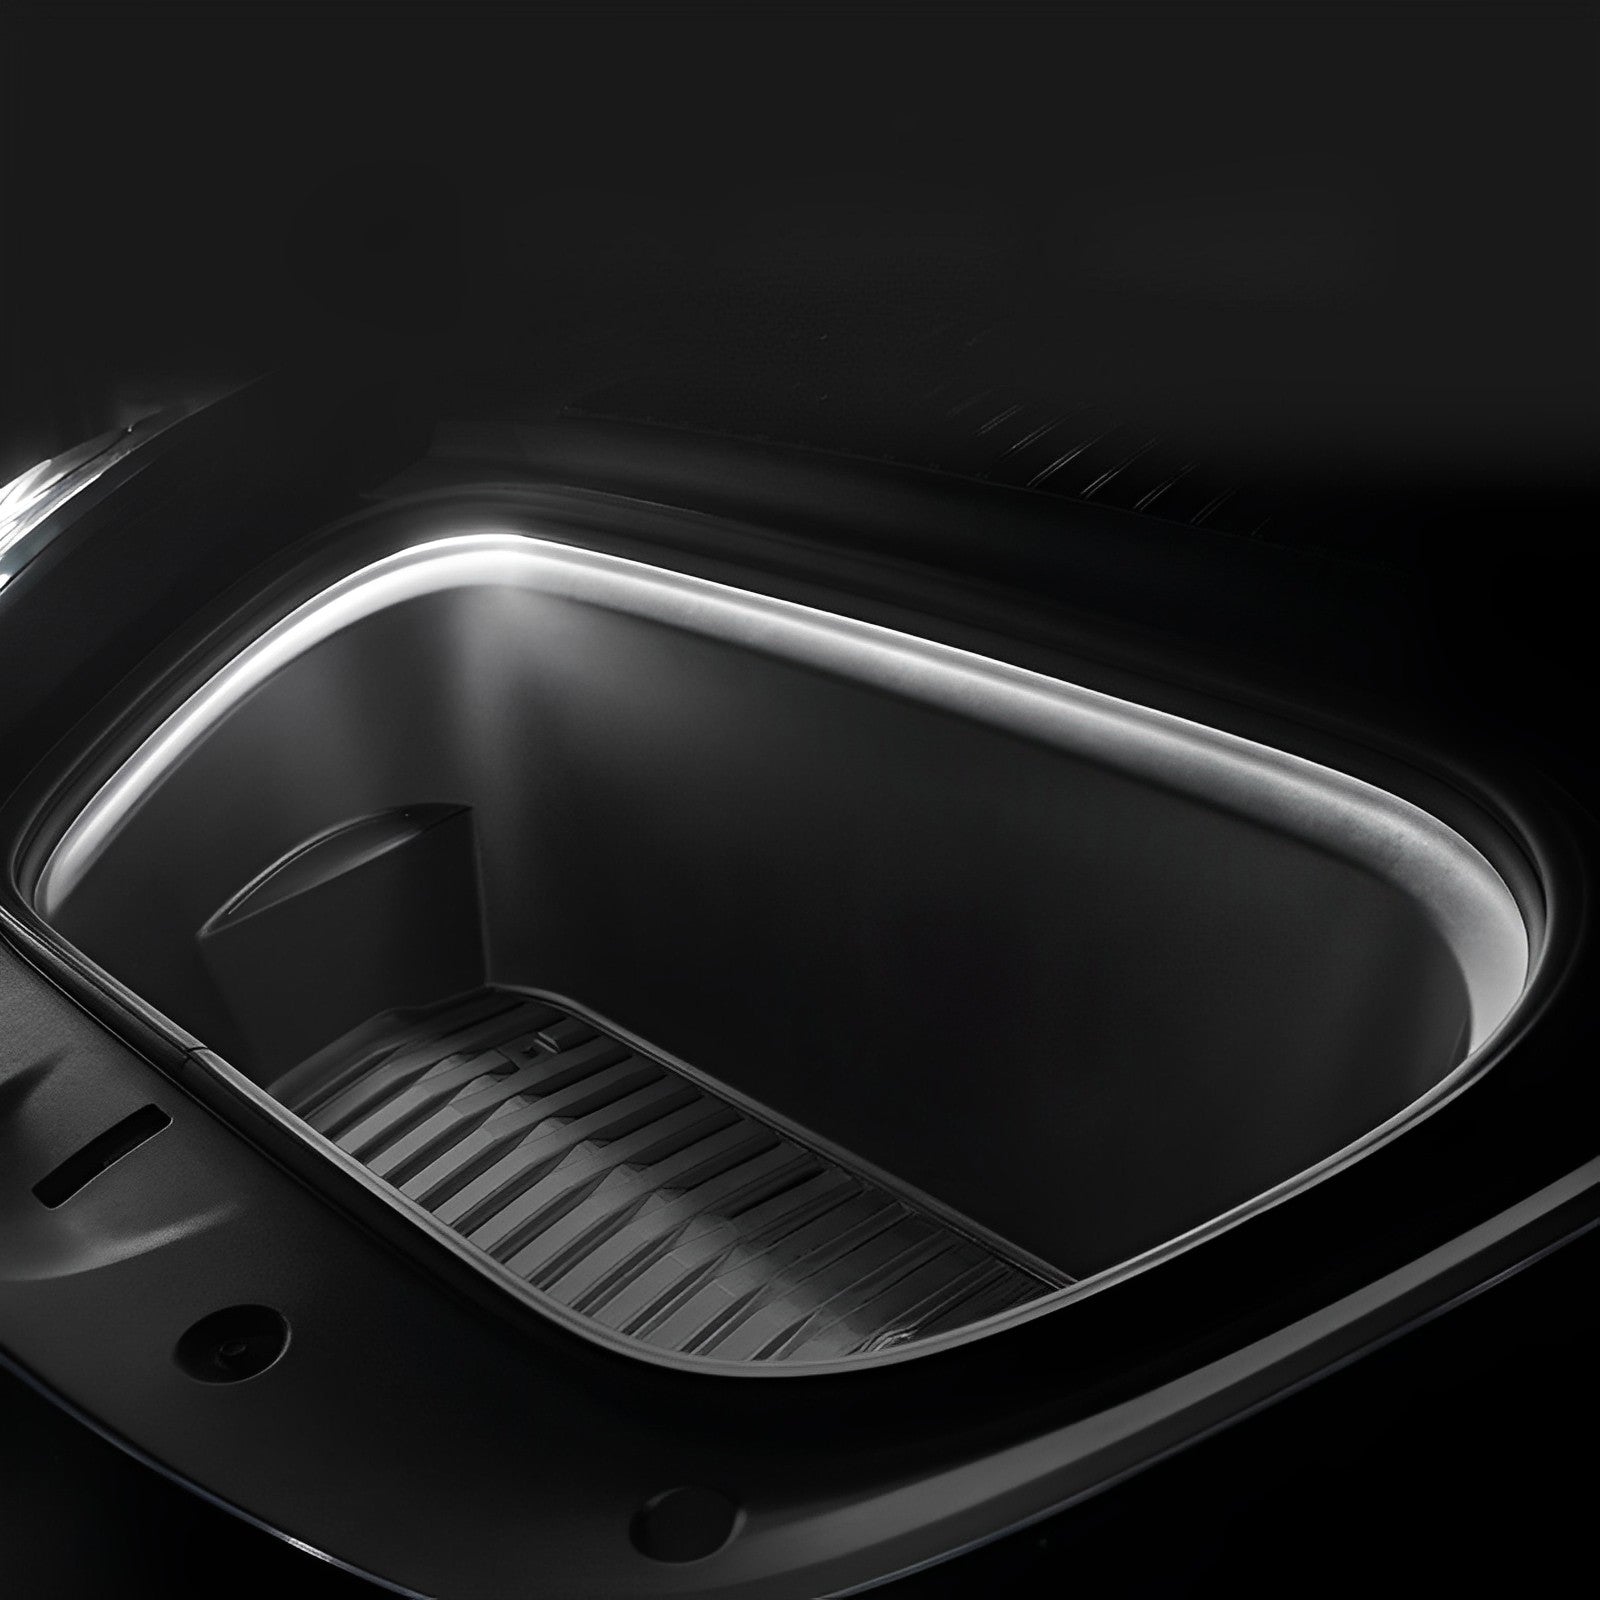 Accesorios para Tesla Model 3 X S Y maletero delantero tira de luz  ambiental LED